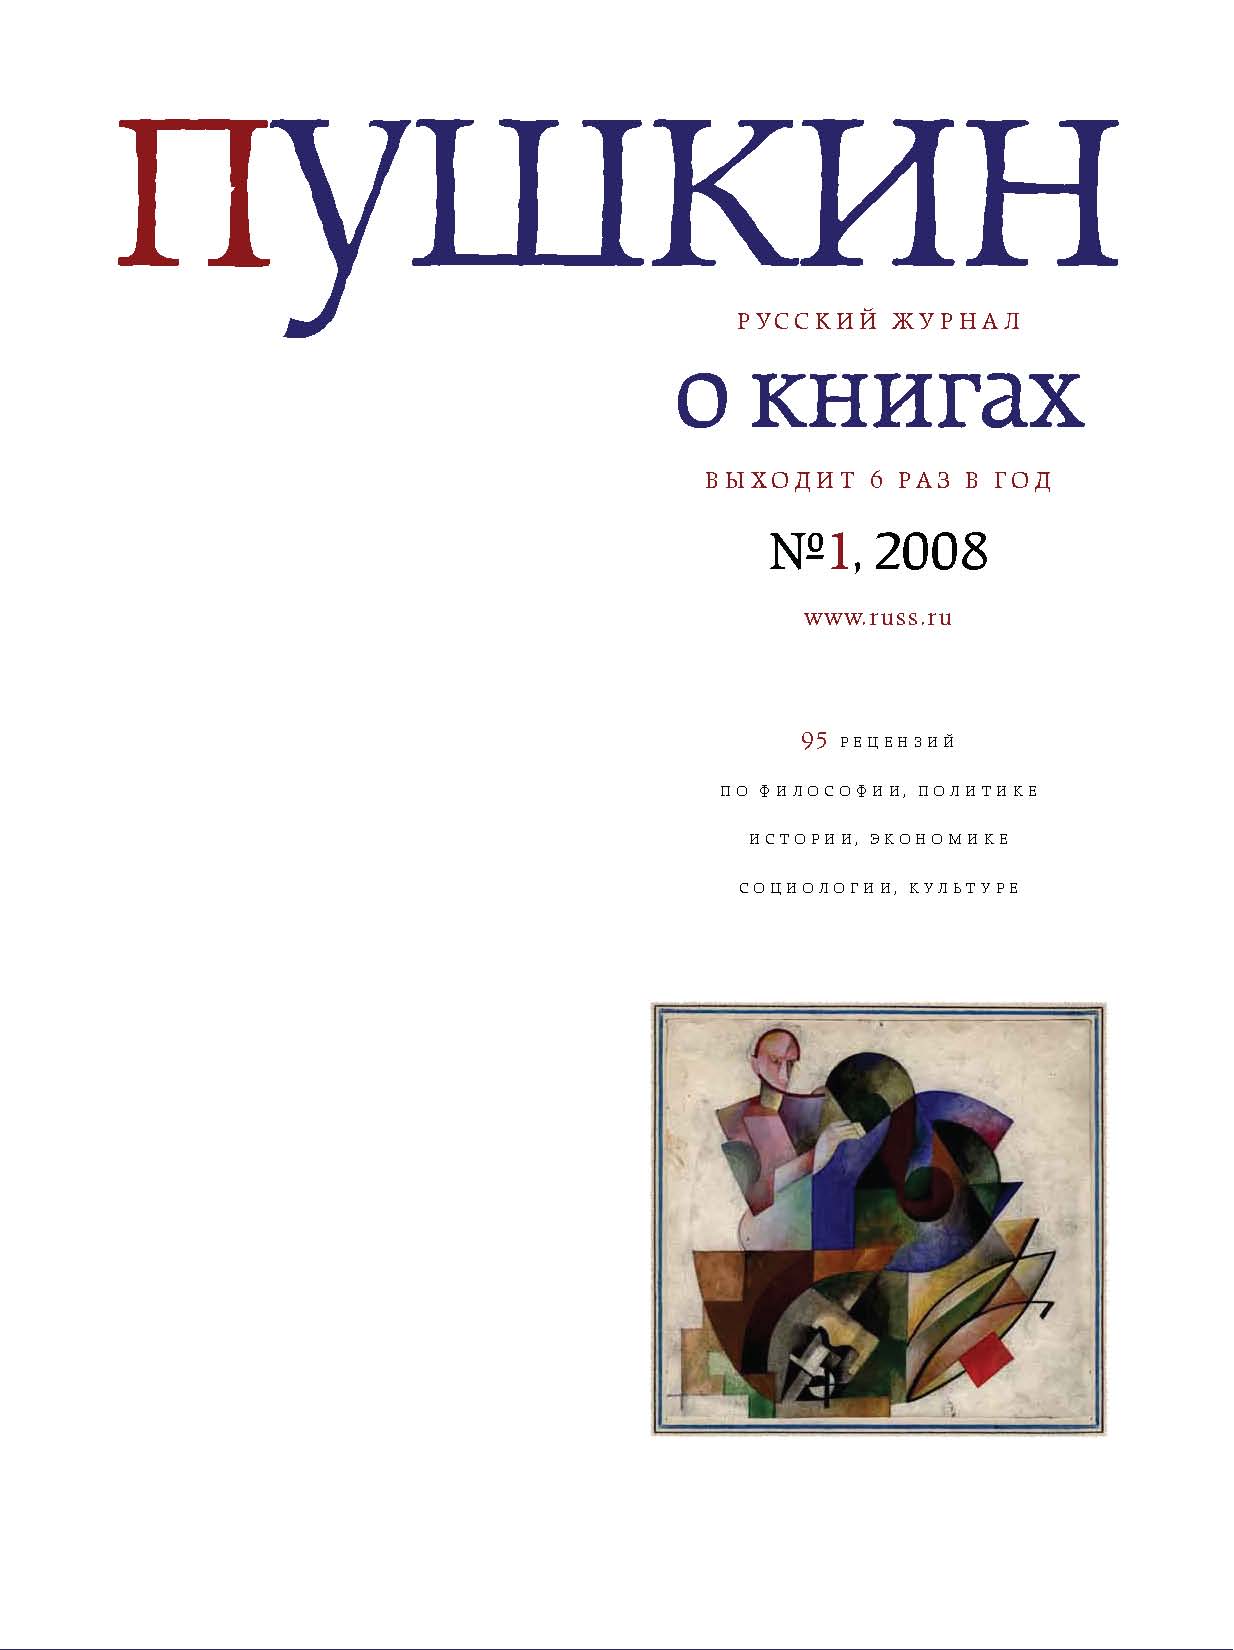 Пушкин. Русский журнал о книгах №01/2008